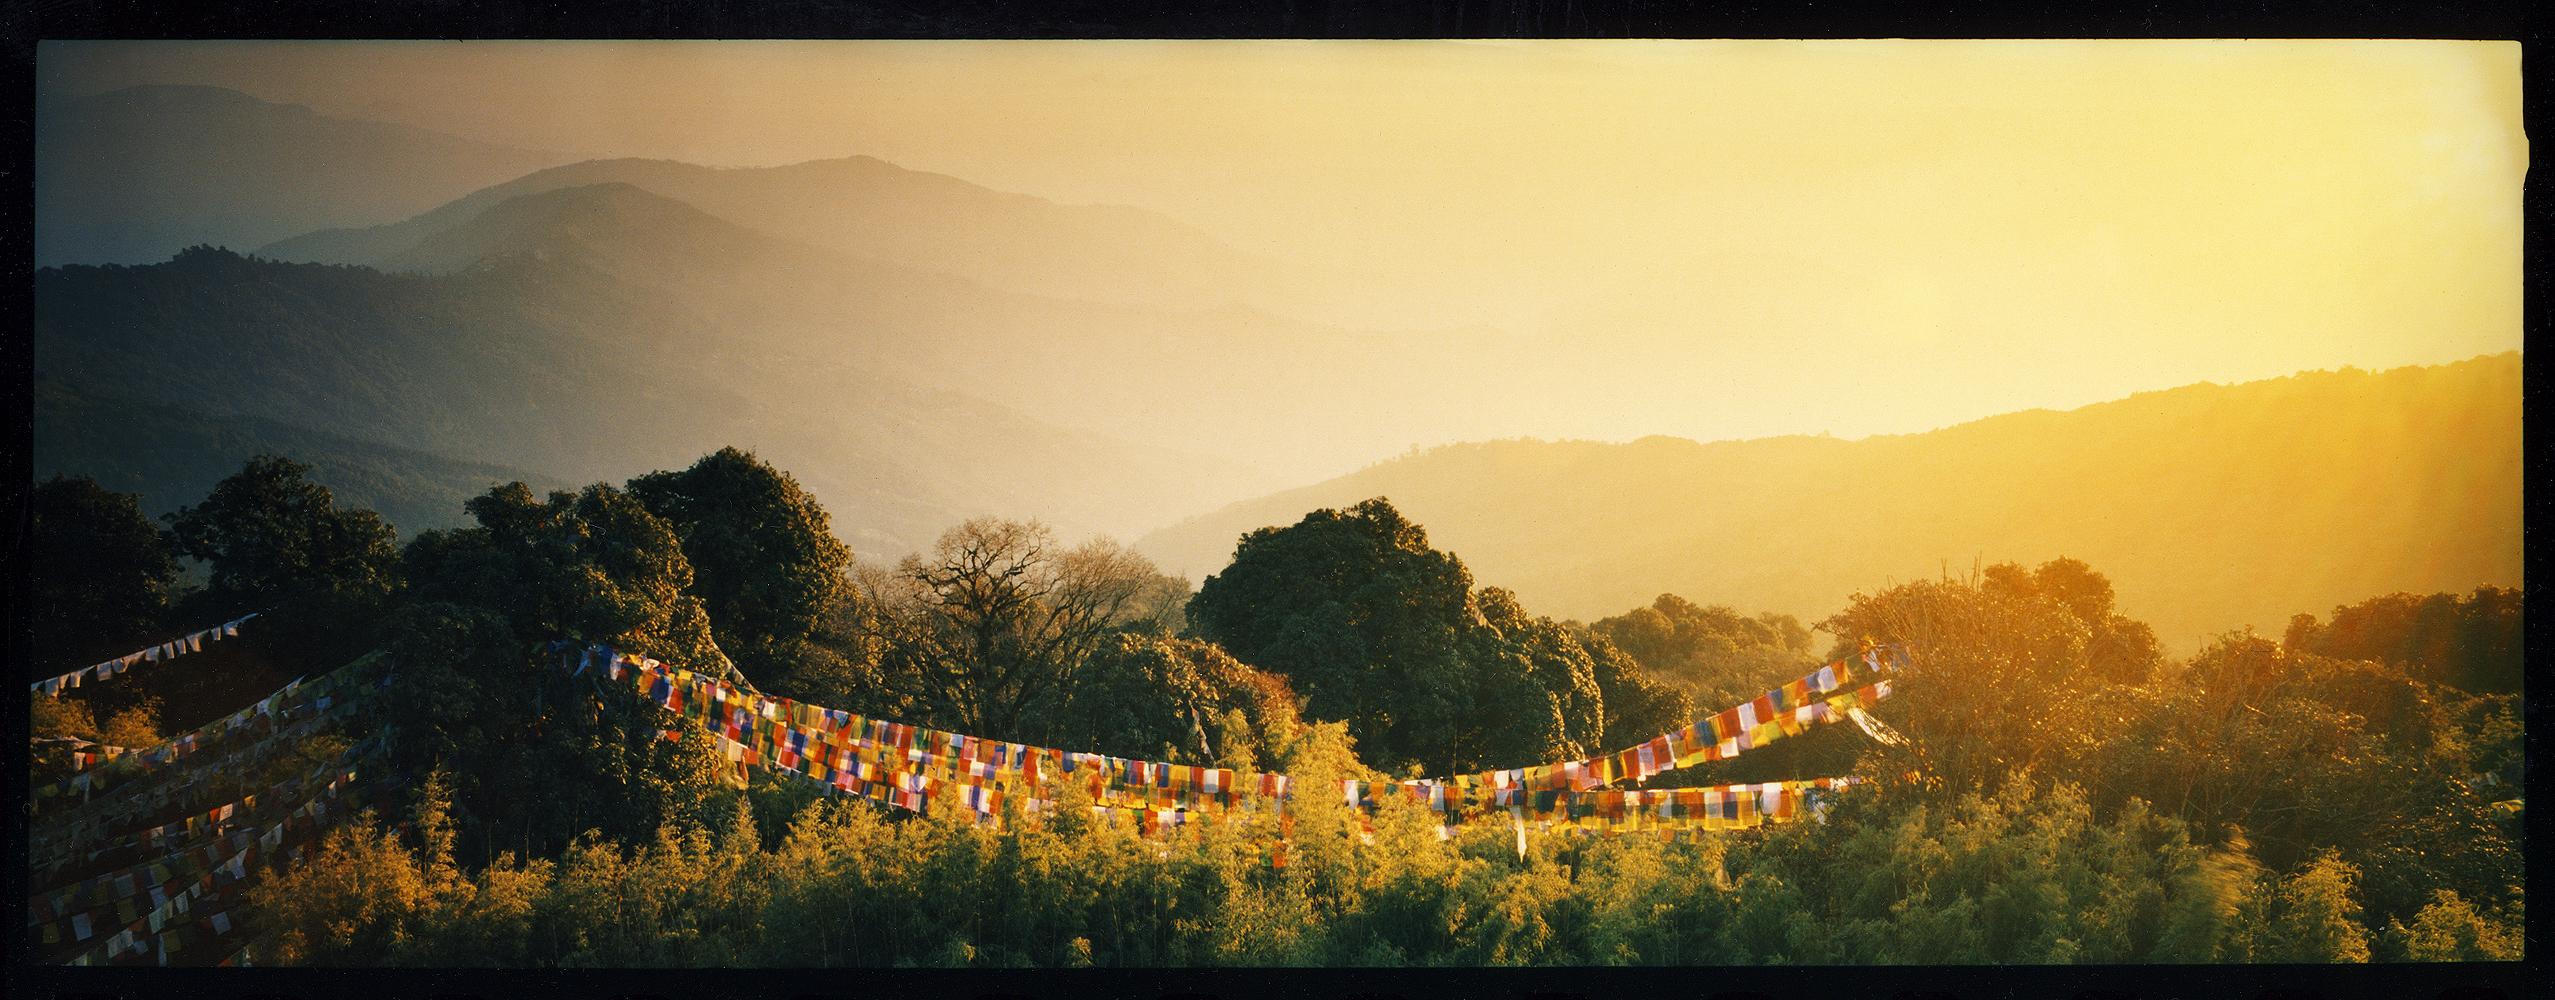 Drapeau de prières, Darjeeling, - Nuage, photographie de paysage en couleur